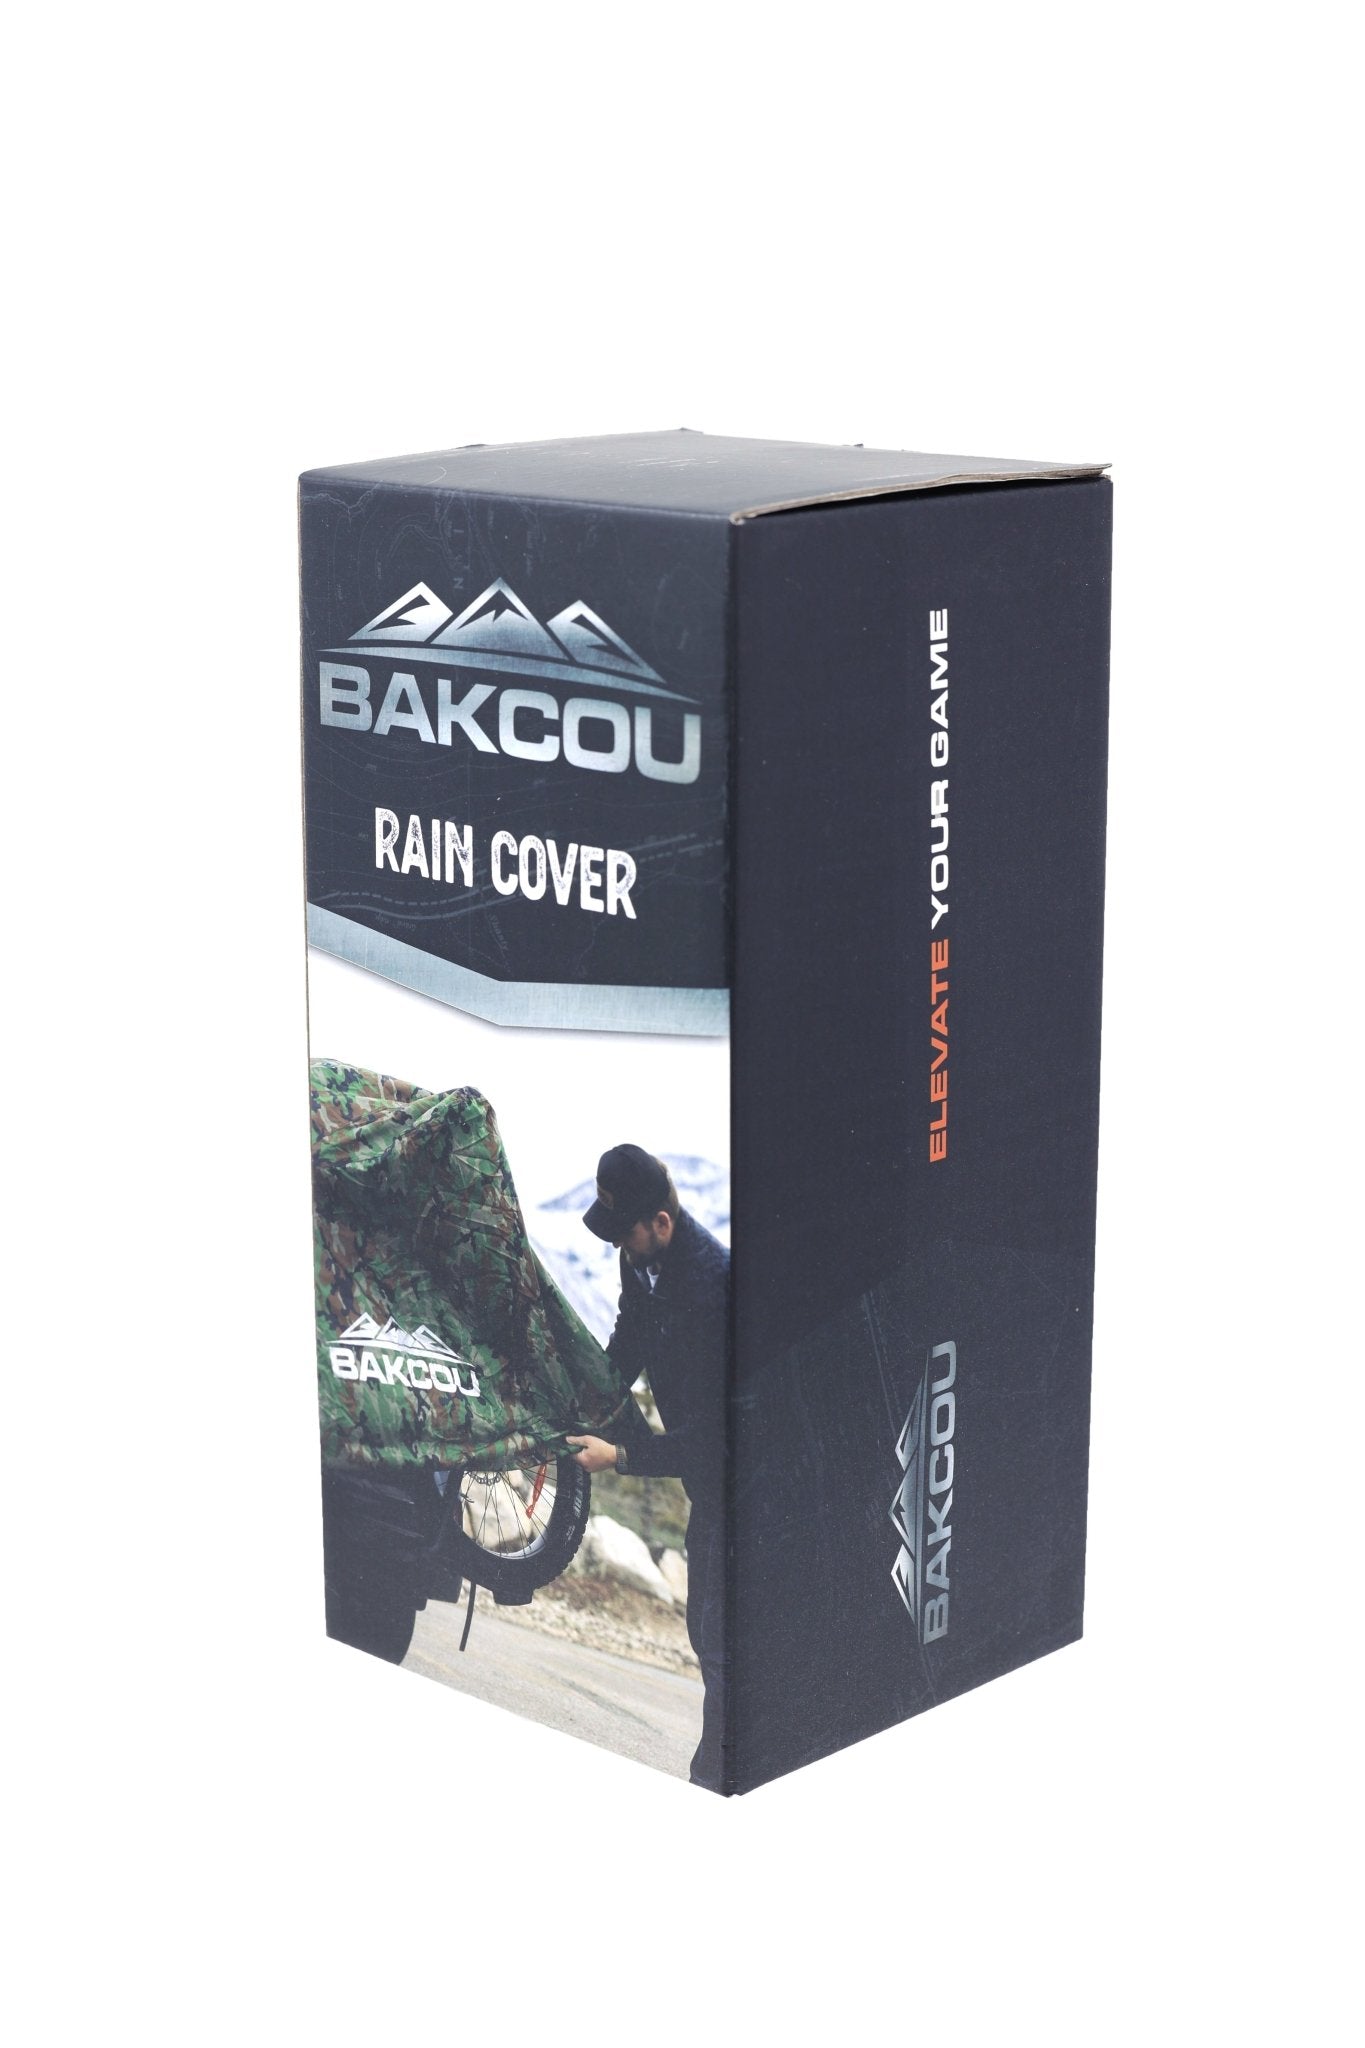 Rain Cover - Bakcou